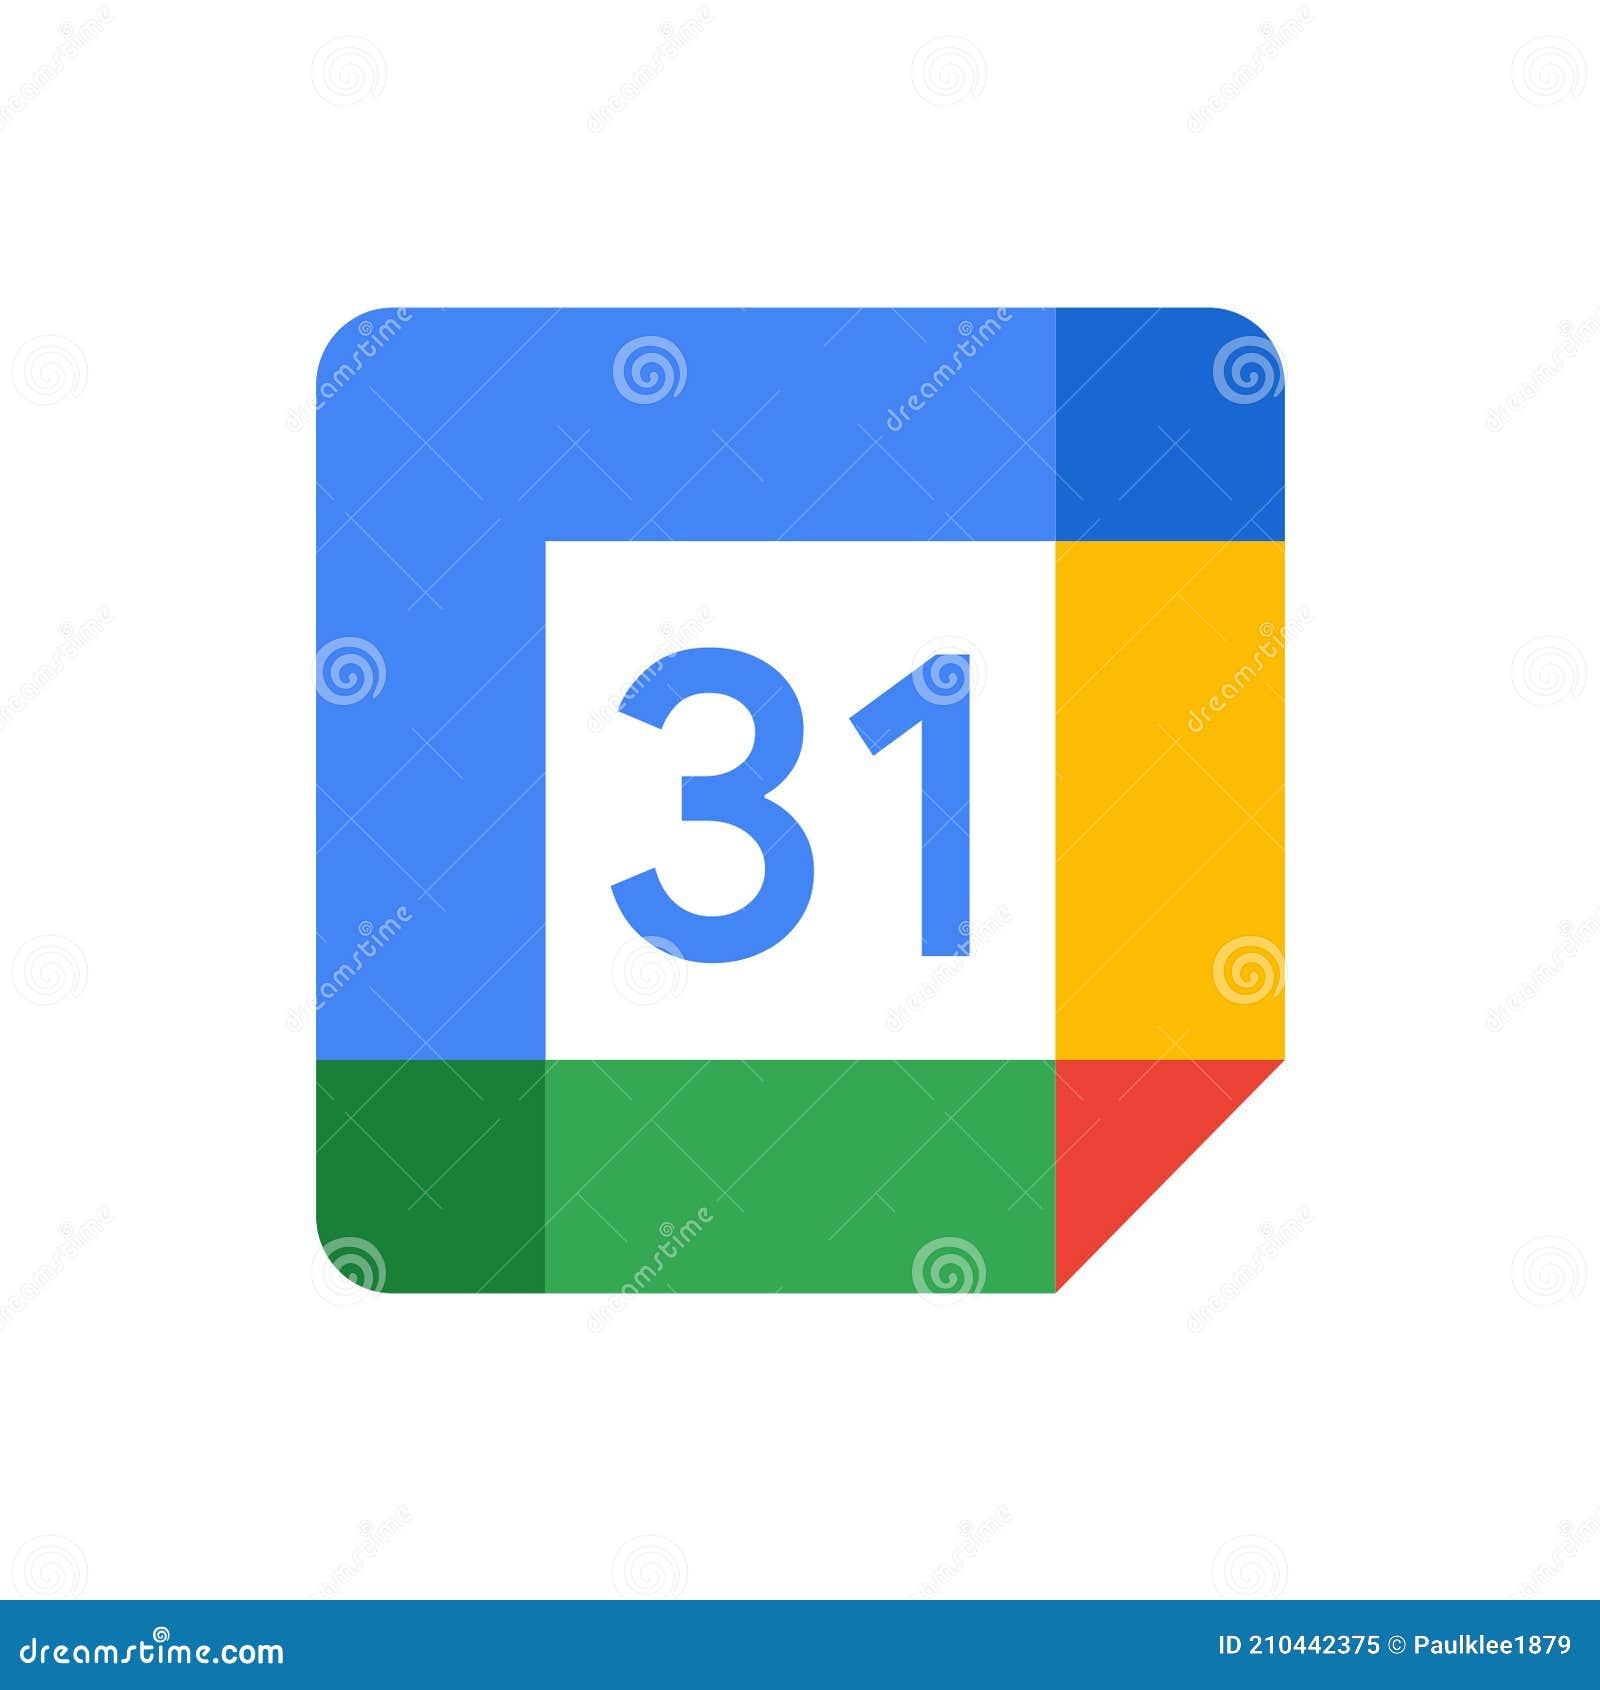 Google Calendar logo white background giúp logo của Google Calendar trở nên nhẹ nhàng và đầy tinh tế hơn. Hãy khám phá hình ảnh liên quan để cùng trải nghiệm và tô điểm Google Calendar của bạn nhé!